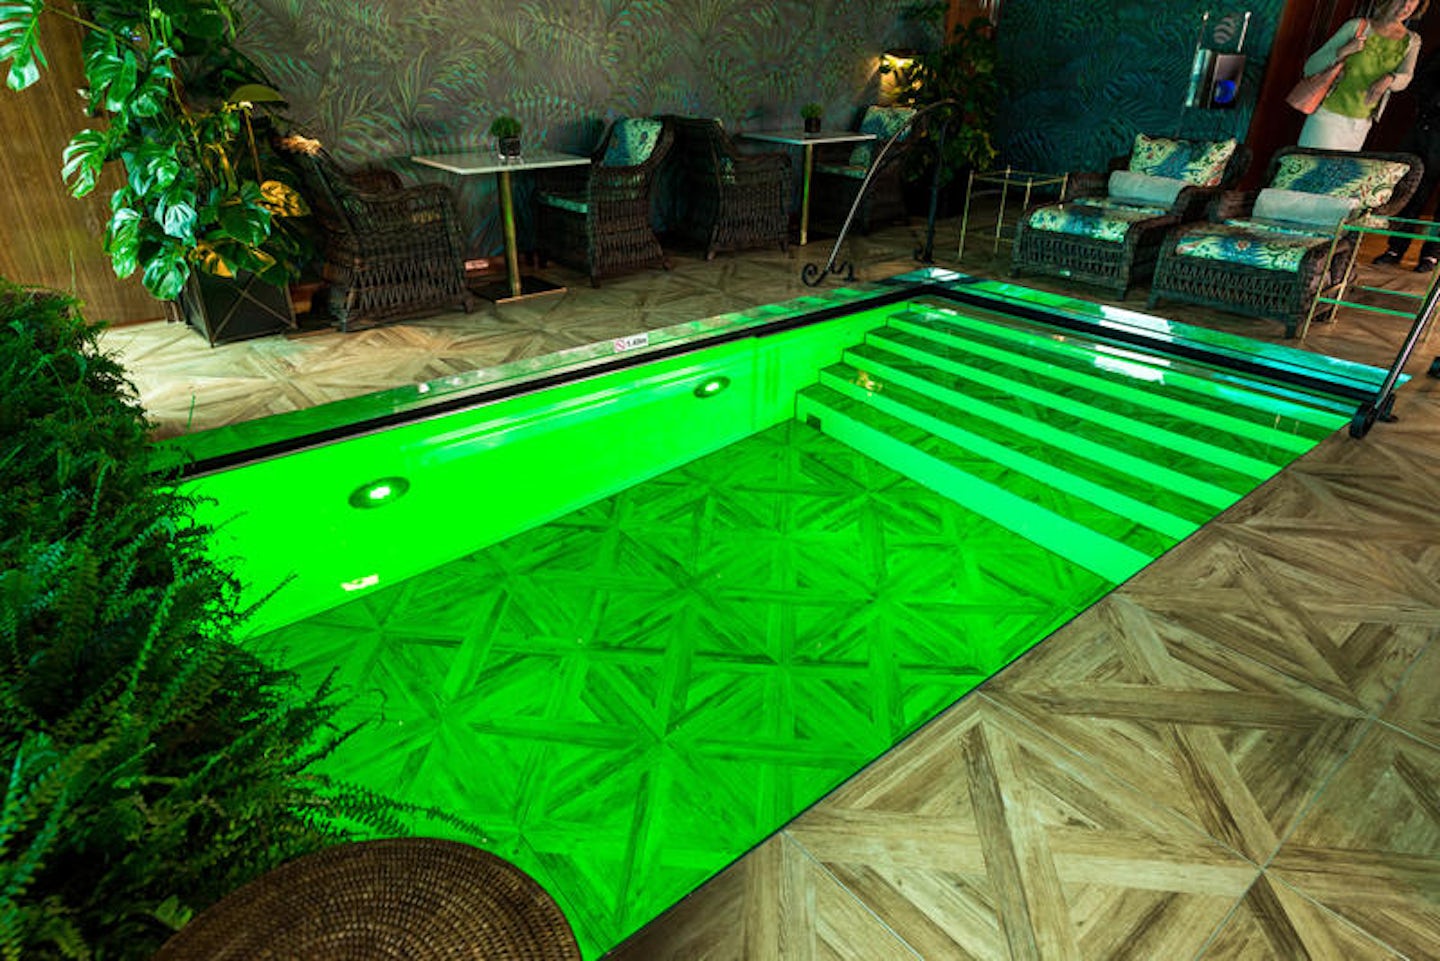 The Pool at Club L'Esprit / Claude's on Joie de Vivre